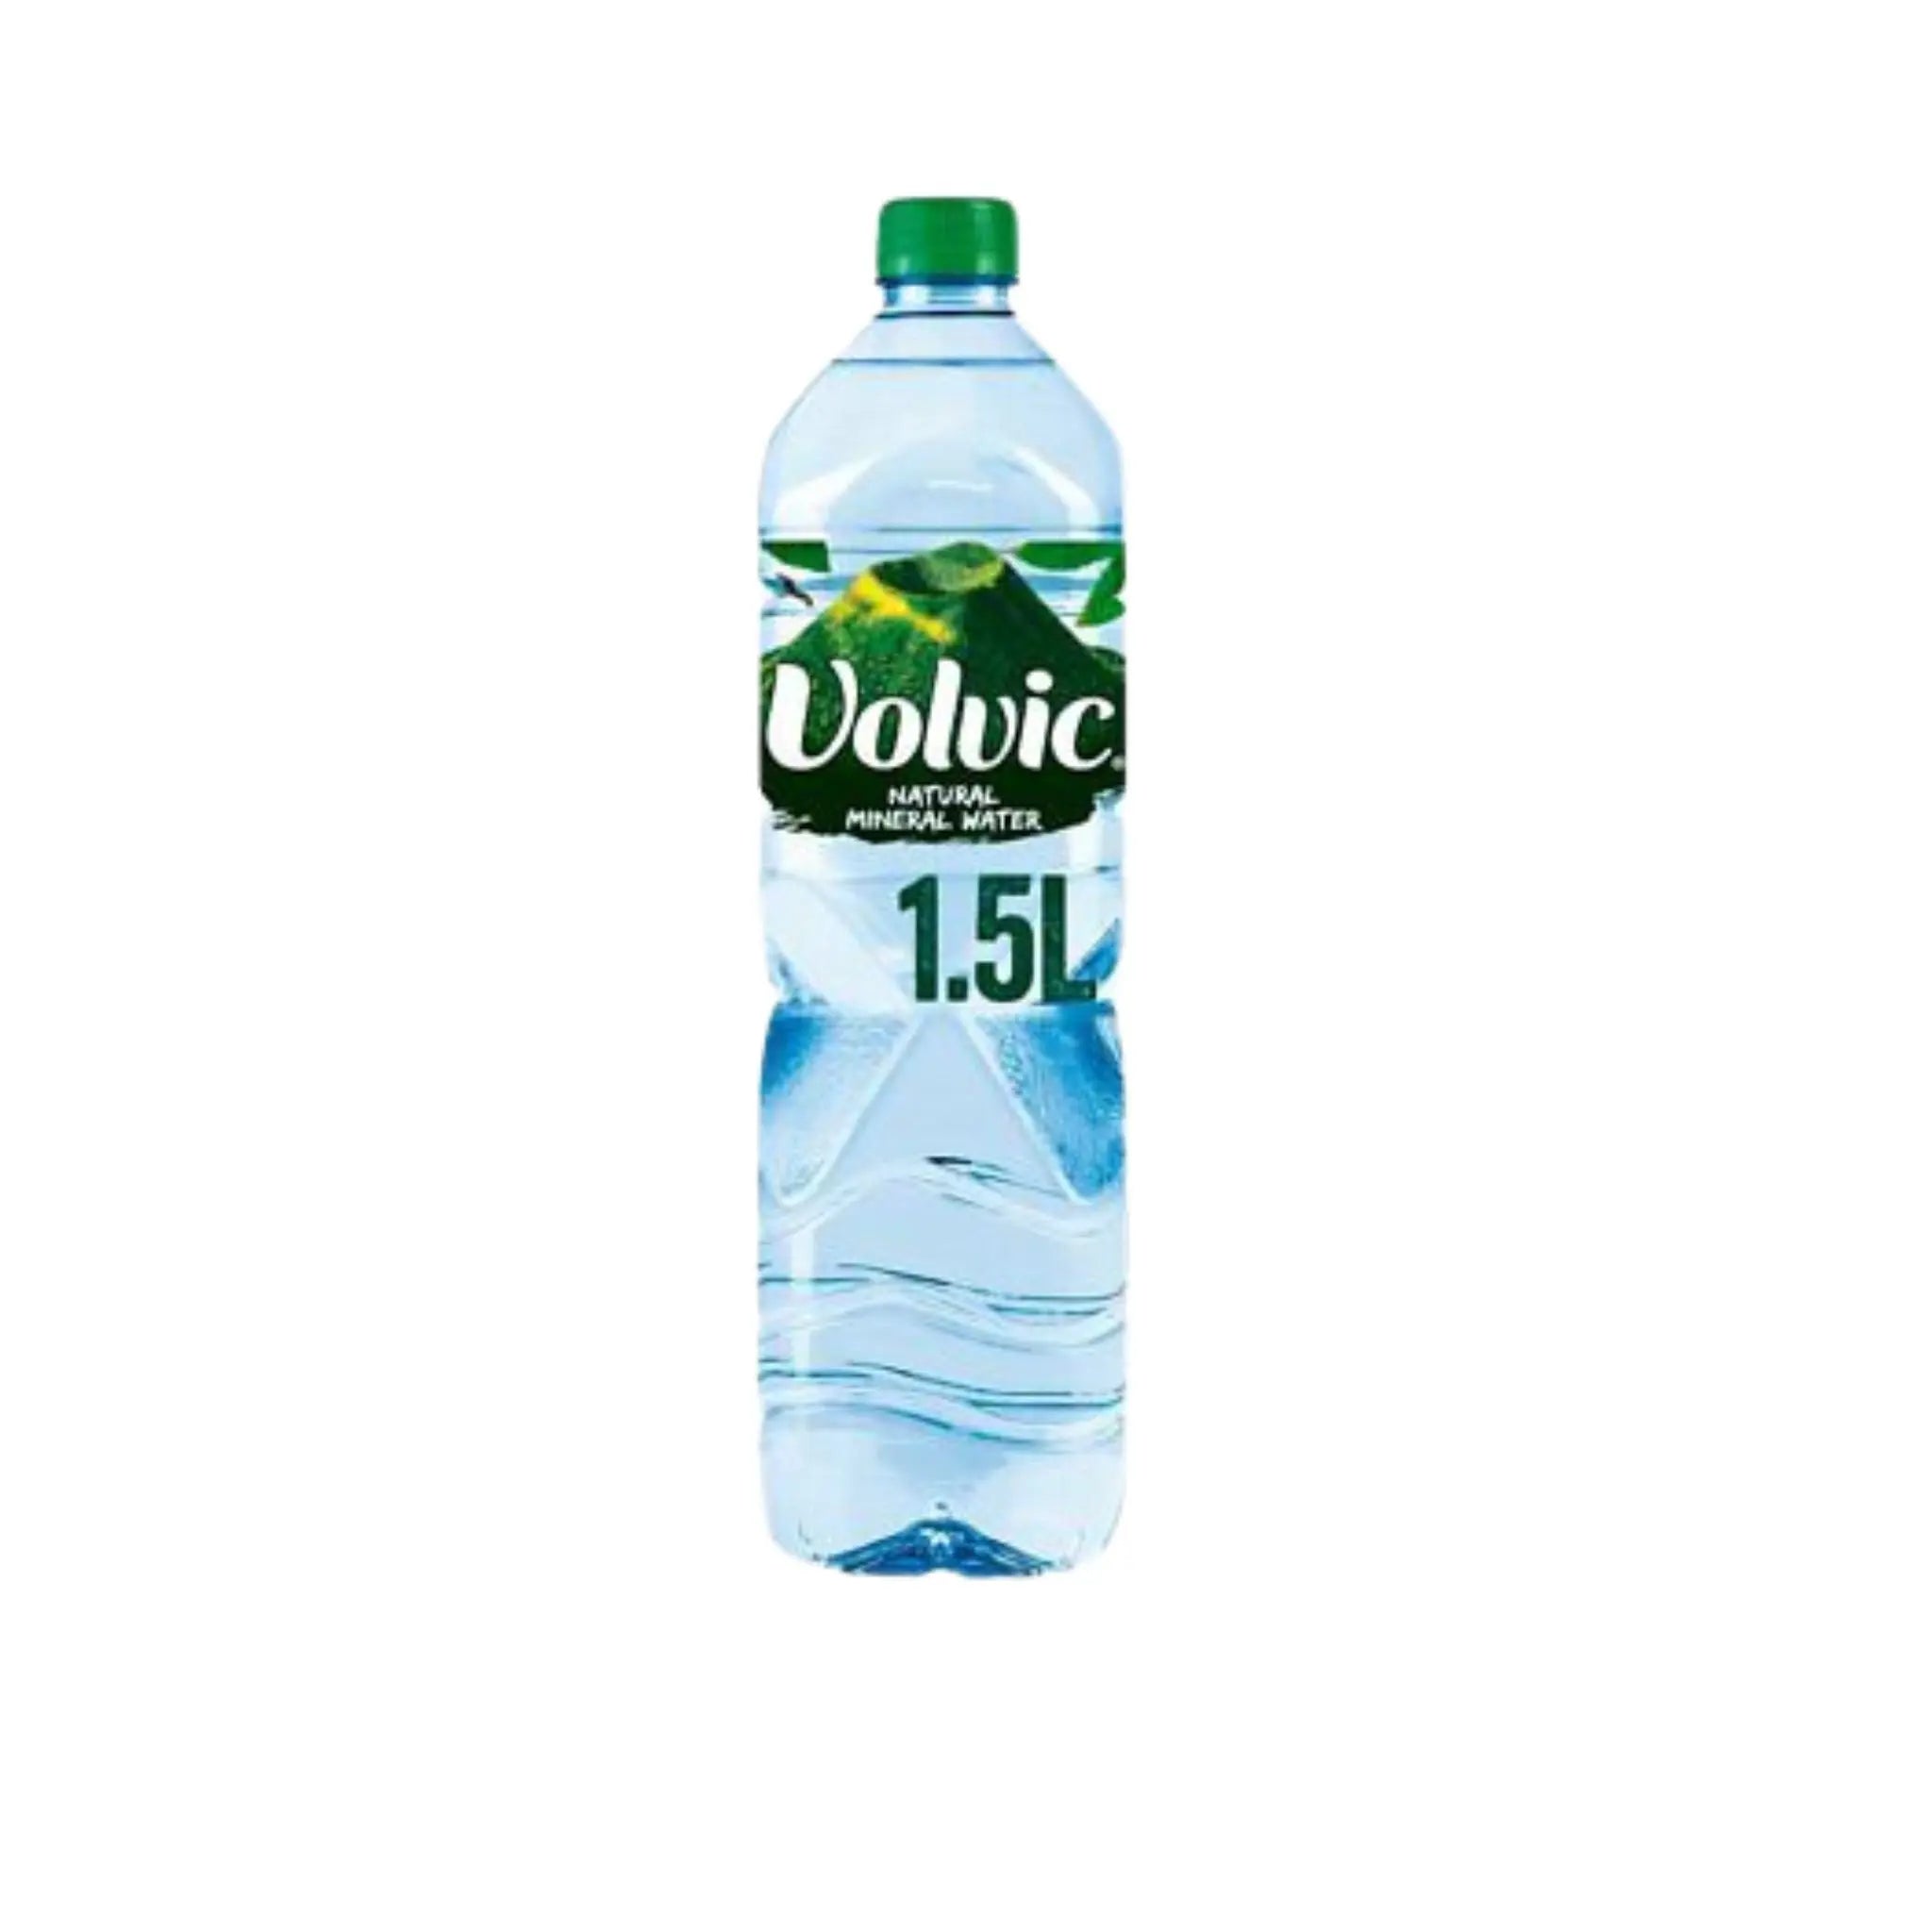 Volvic Natural Mineral Water  PET - 12x1.5L (1 carton ) - Marino.AE